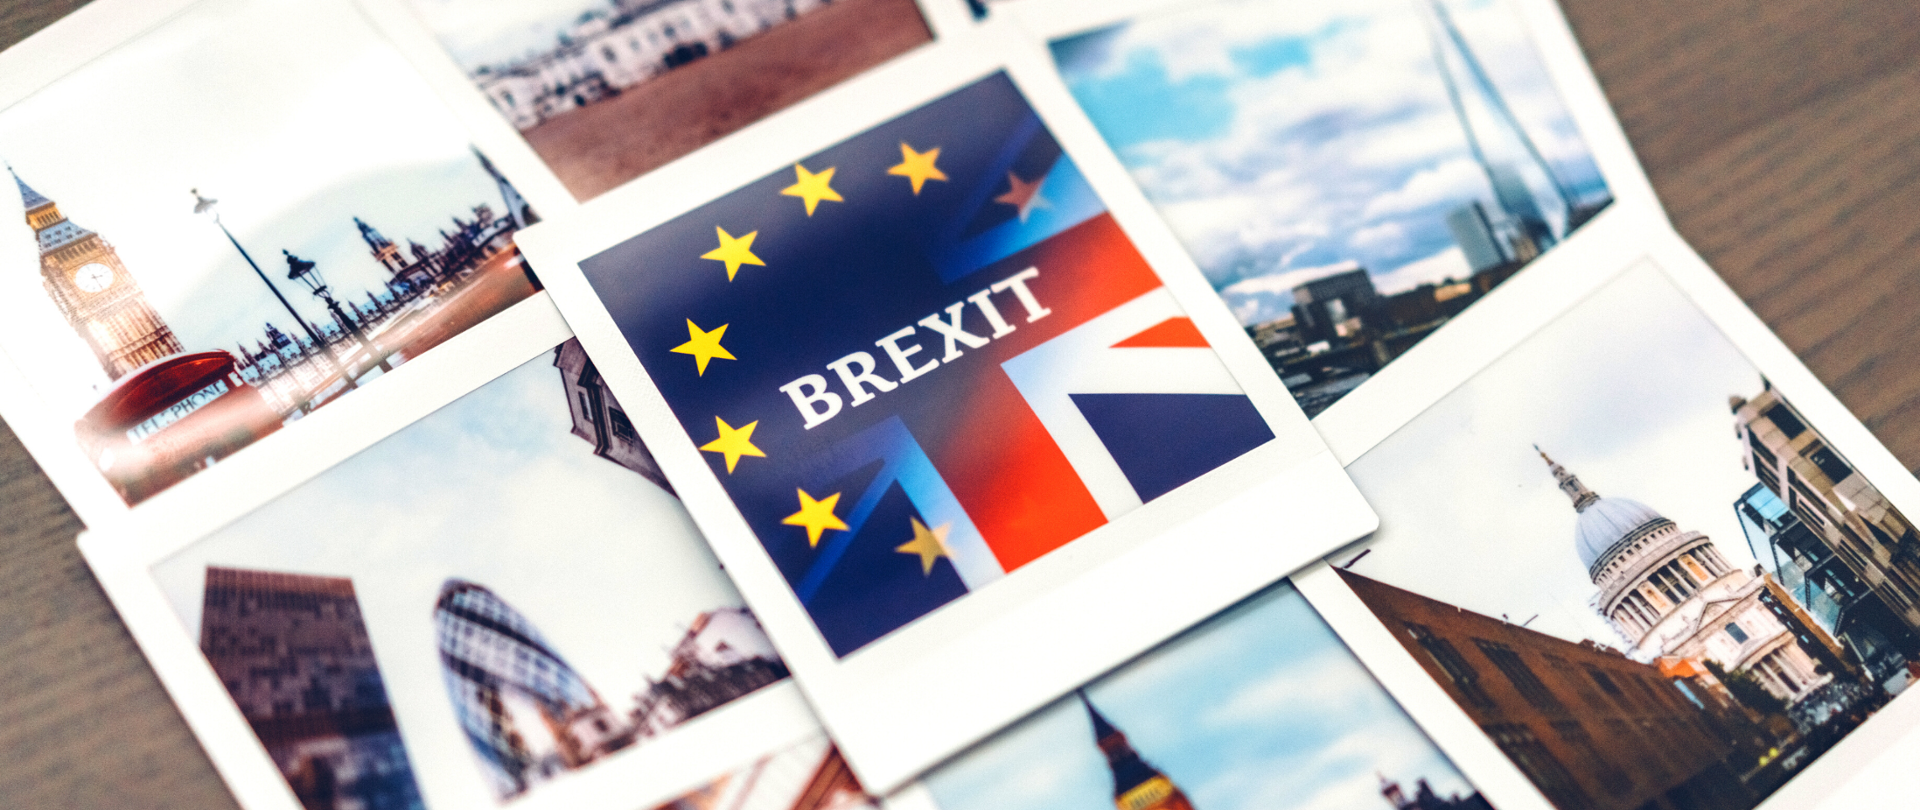 Leżące na stole wywołane zdjęcia typu polaroid. Na każdy - obrazki z Londynu. Na pierwszym planie leżące na samej górze zdjęcie z nachodzącymi na siebie flagami Unii Europejskiej i Wielkiej Brytanii oraz napisem Brexit.